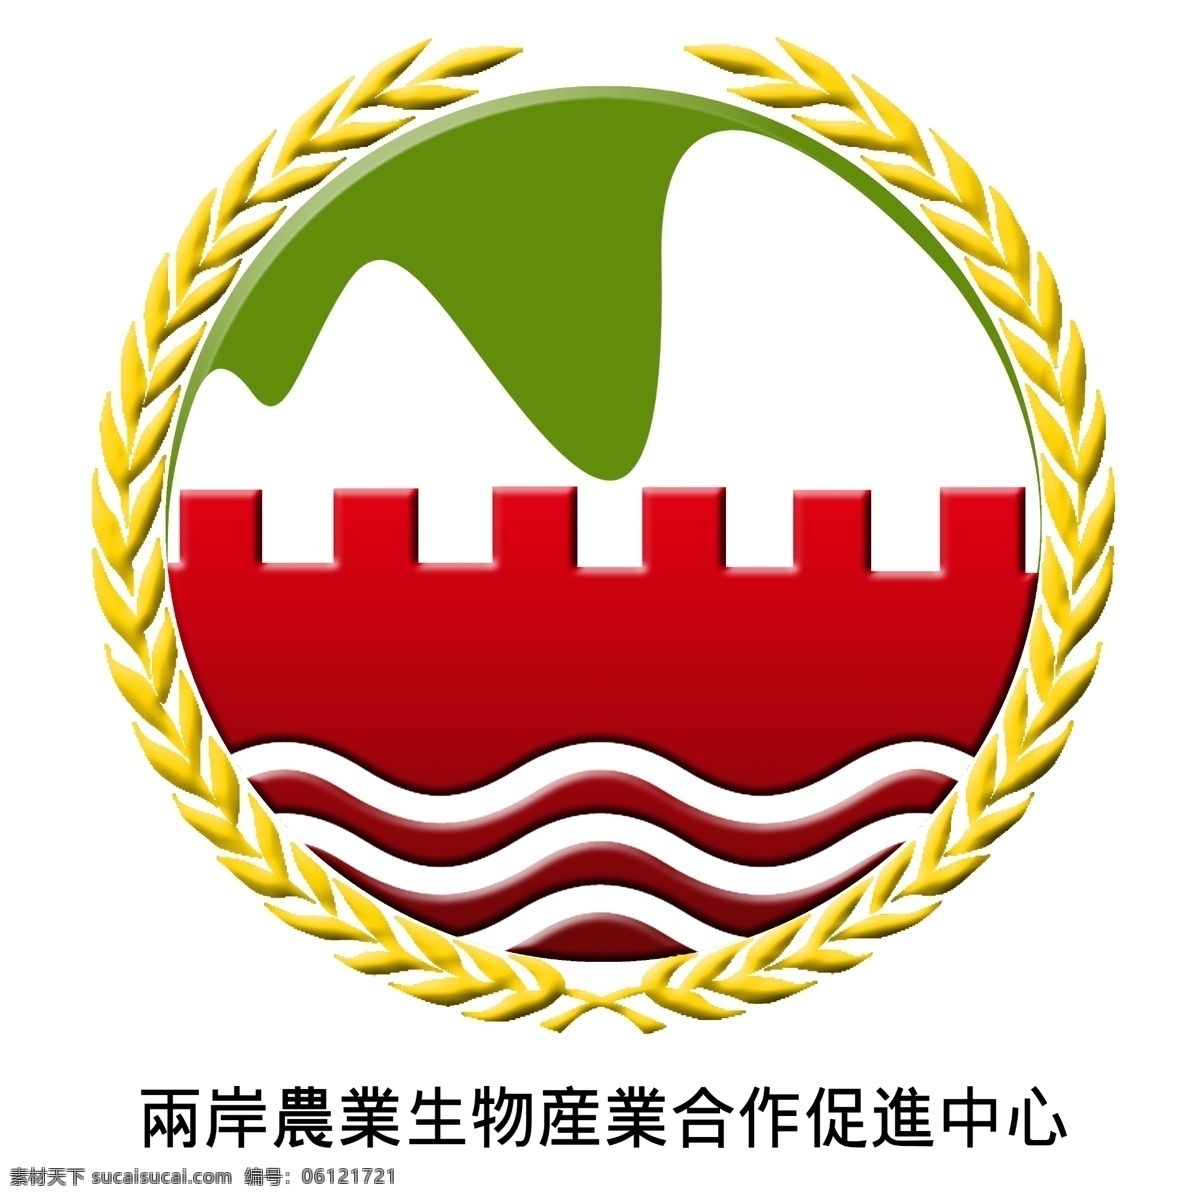 两岸 农业 生物技术 交流中心 logo 阿里山 长城 两岸农业合作 白色